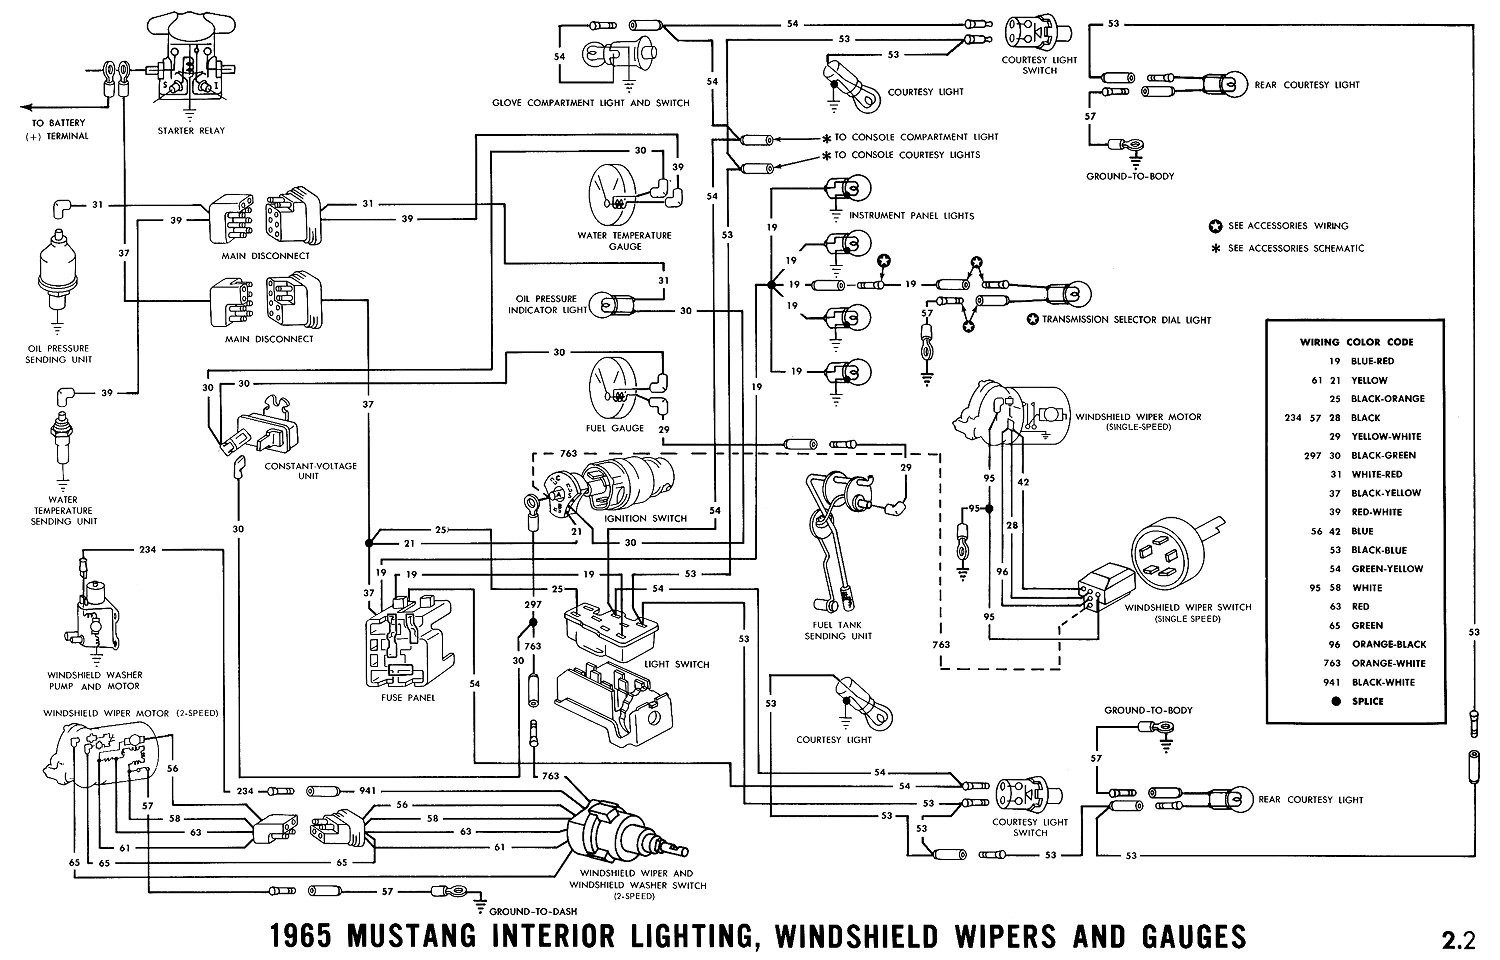 1966 Mustang Wiring Diagram Best 1966 Mustang Wiring Diagrams Average Joe Restoration Best 66 Diagram